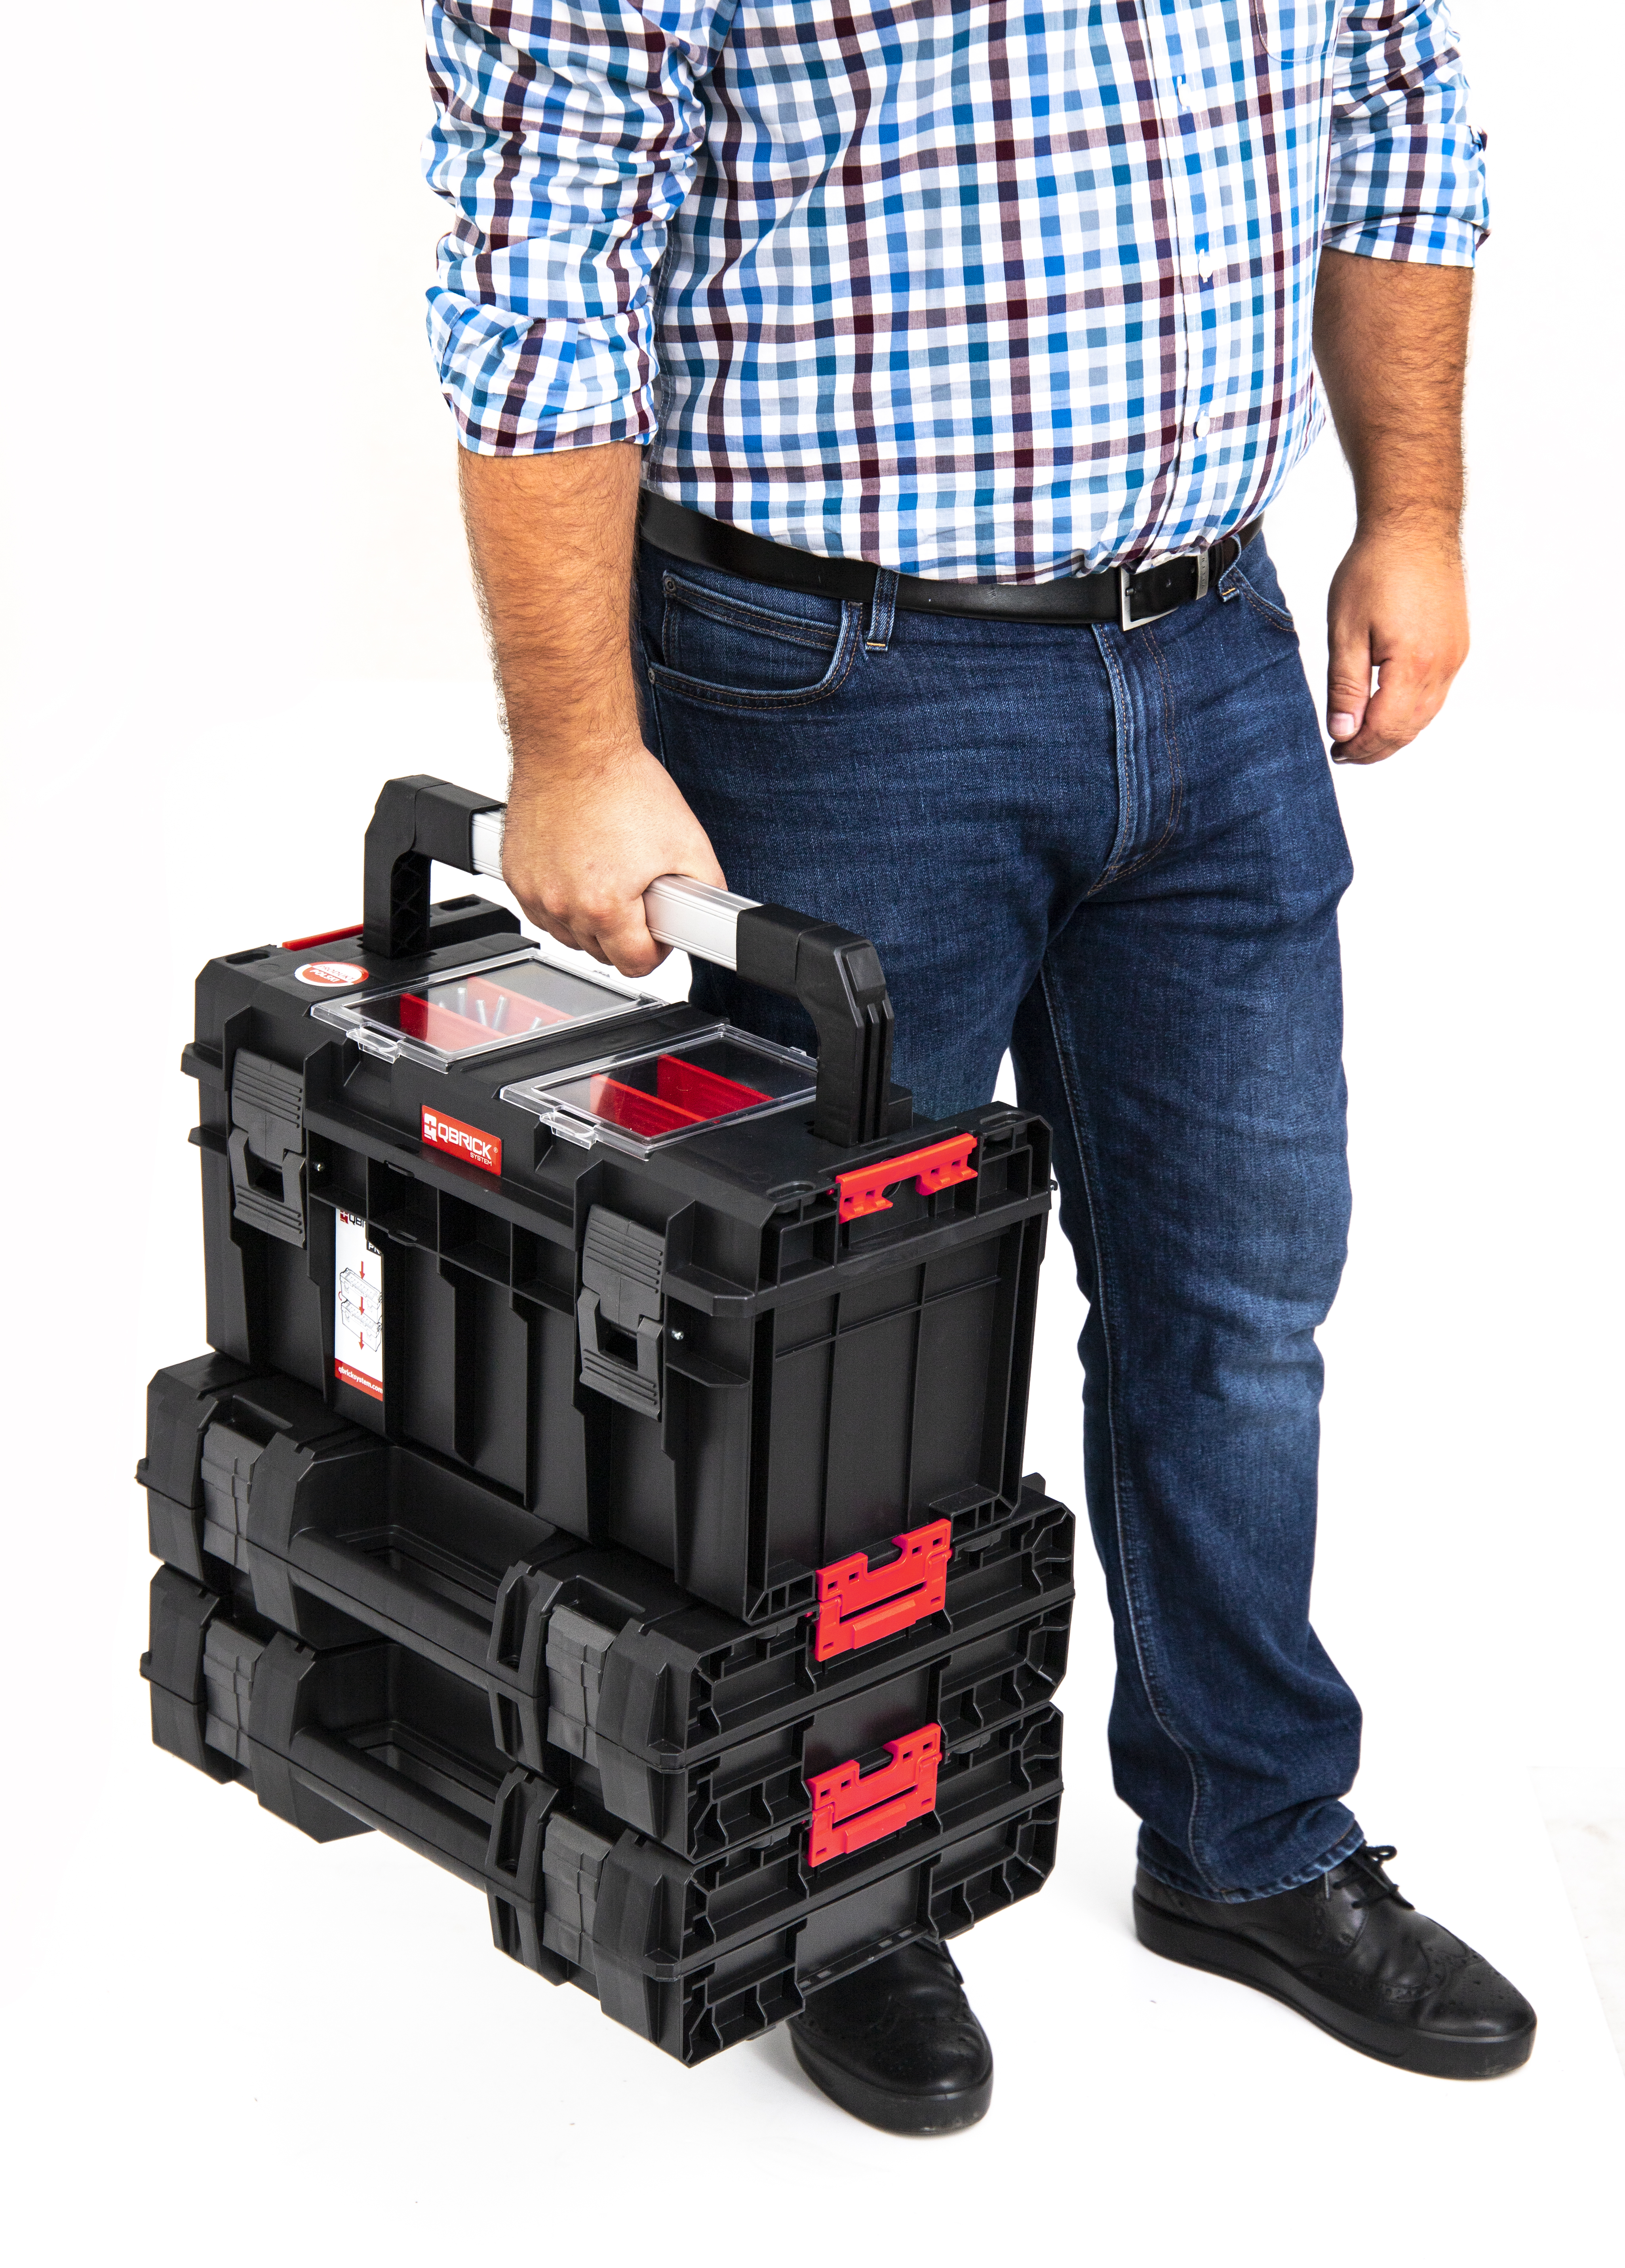 Neerwaarts Behoren Veroveren Qbrick Koffer voor elektrisch gereedschap System Pro